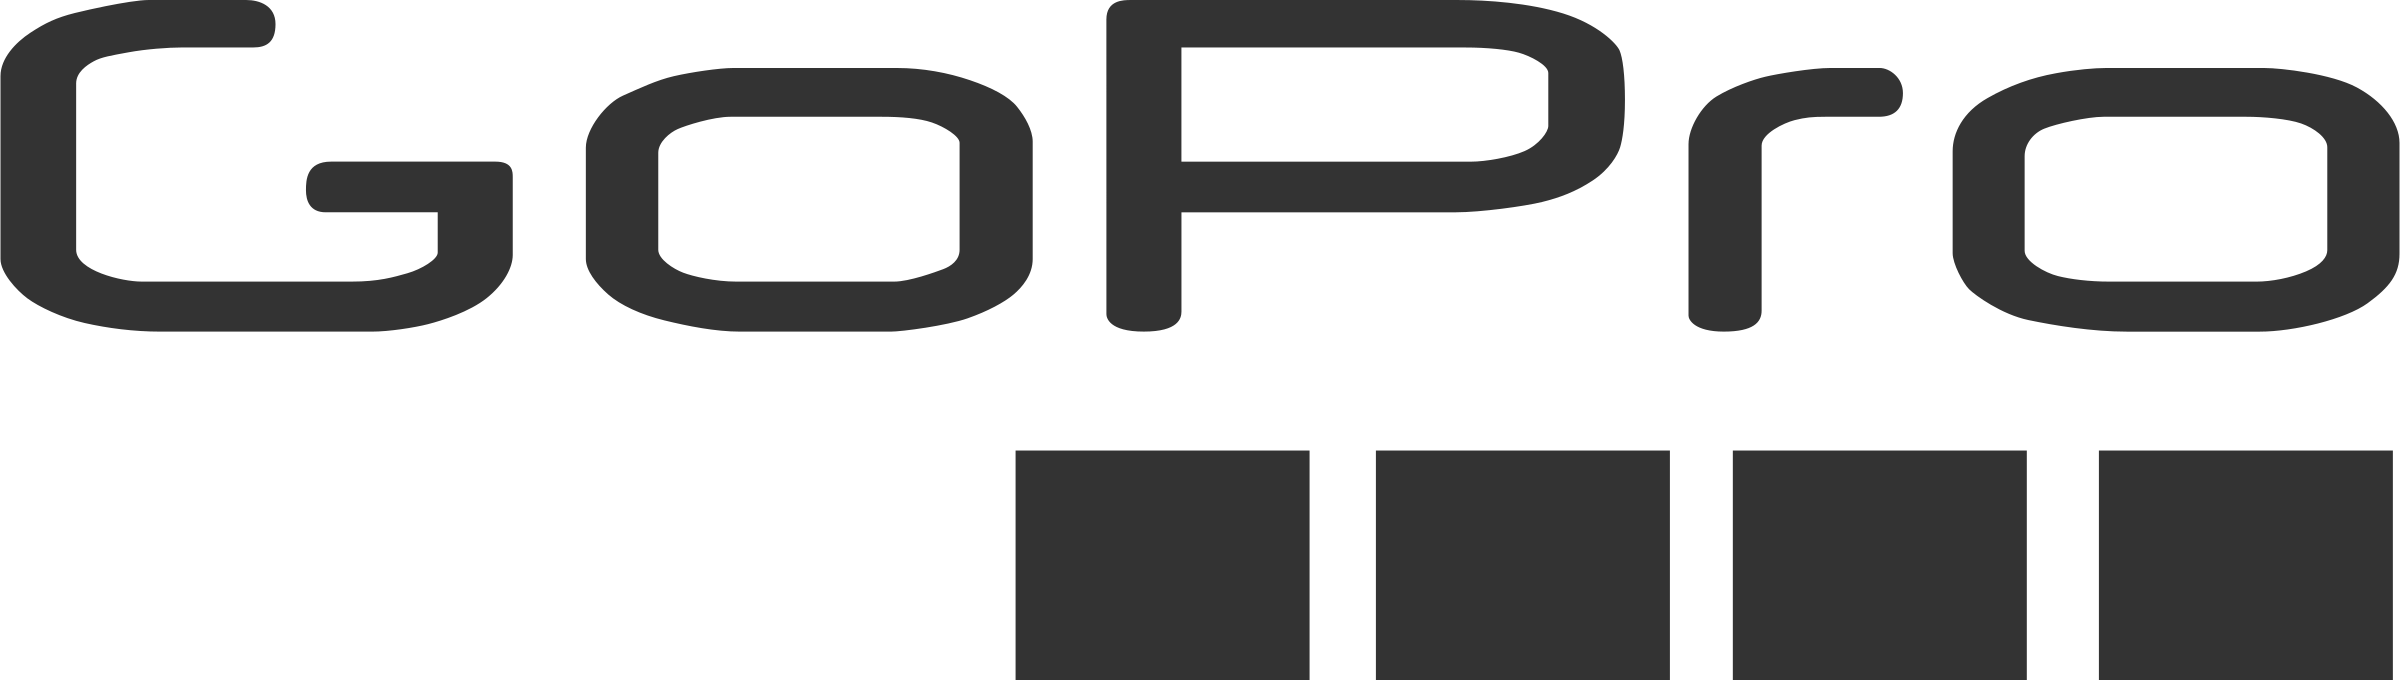 GoPro cameras PNG images Download 